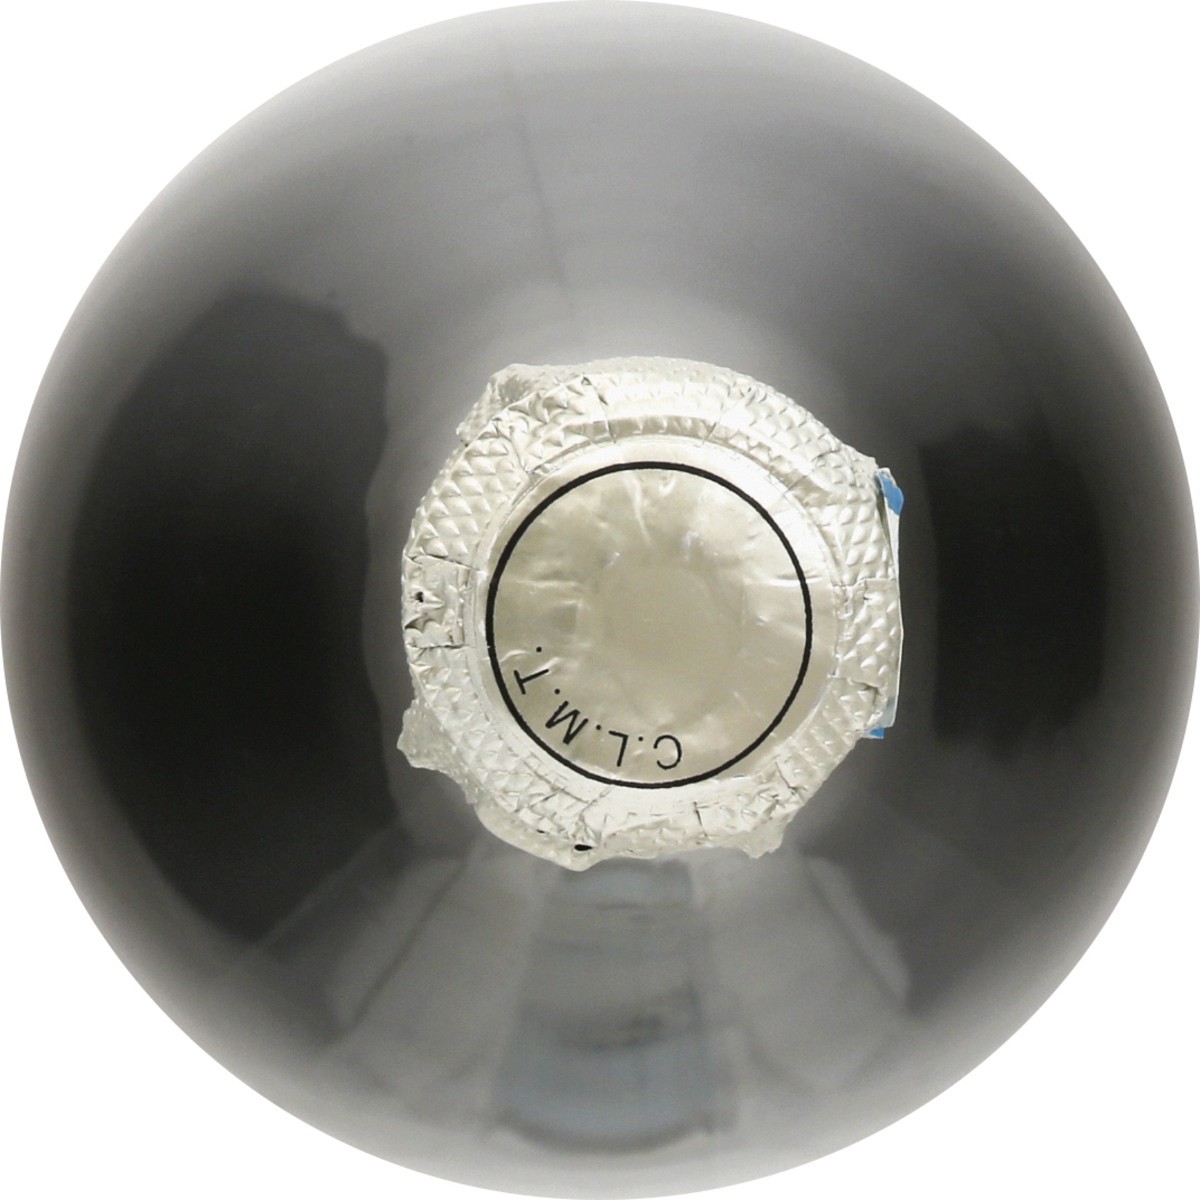 slide 9 of 9, La Marca Sparkling White Prosecco Wine, 750 ml